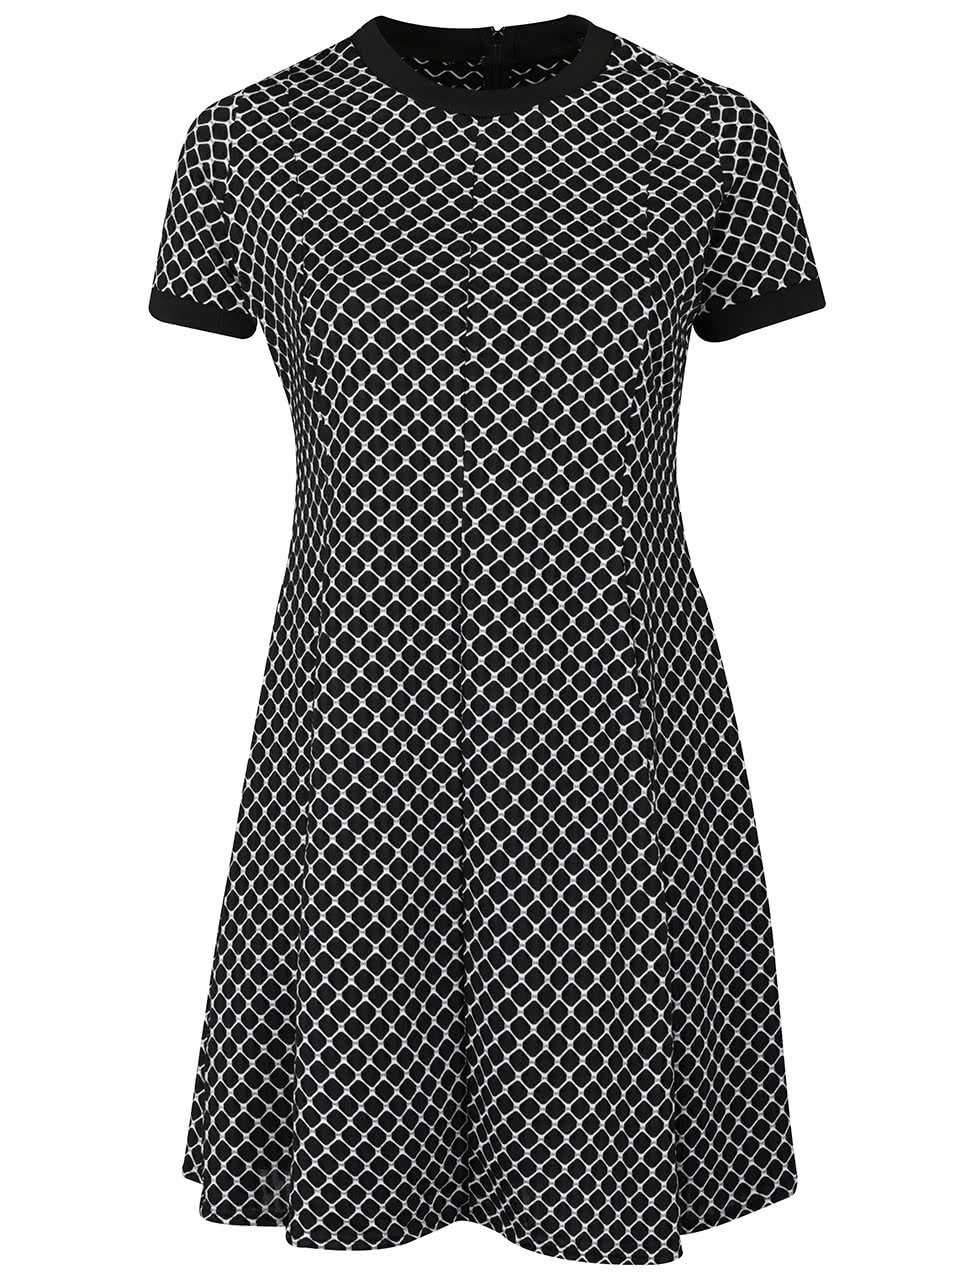 Bílo-černé vzorované šaty Dorothy Perkins Curve